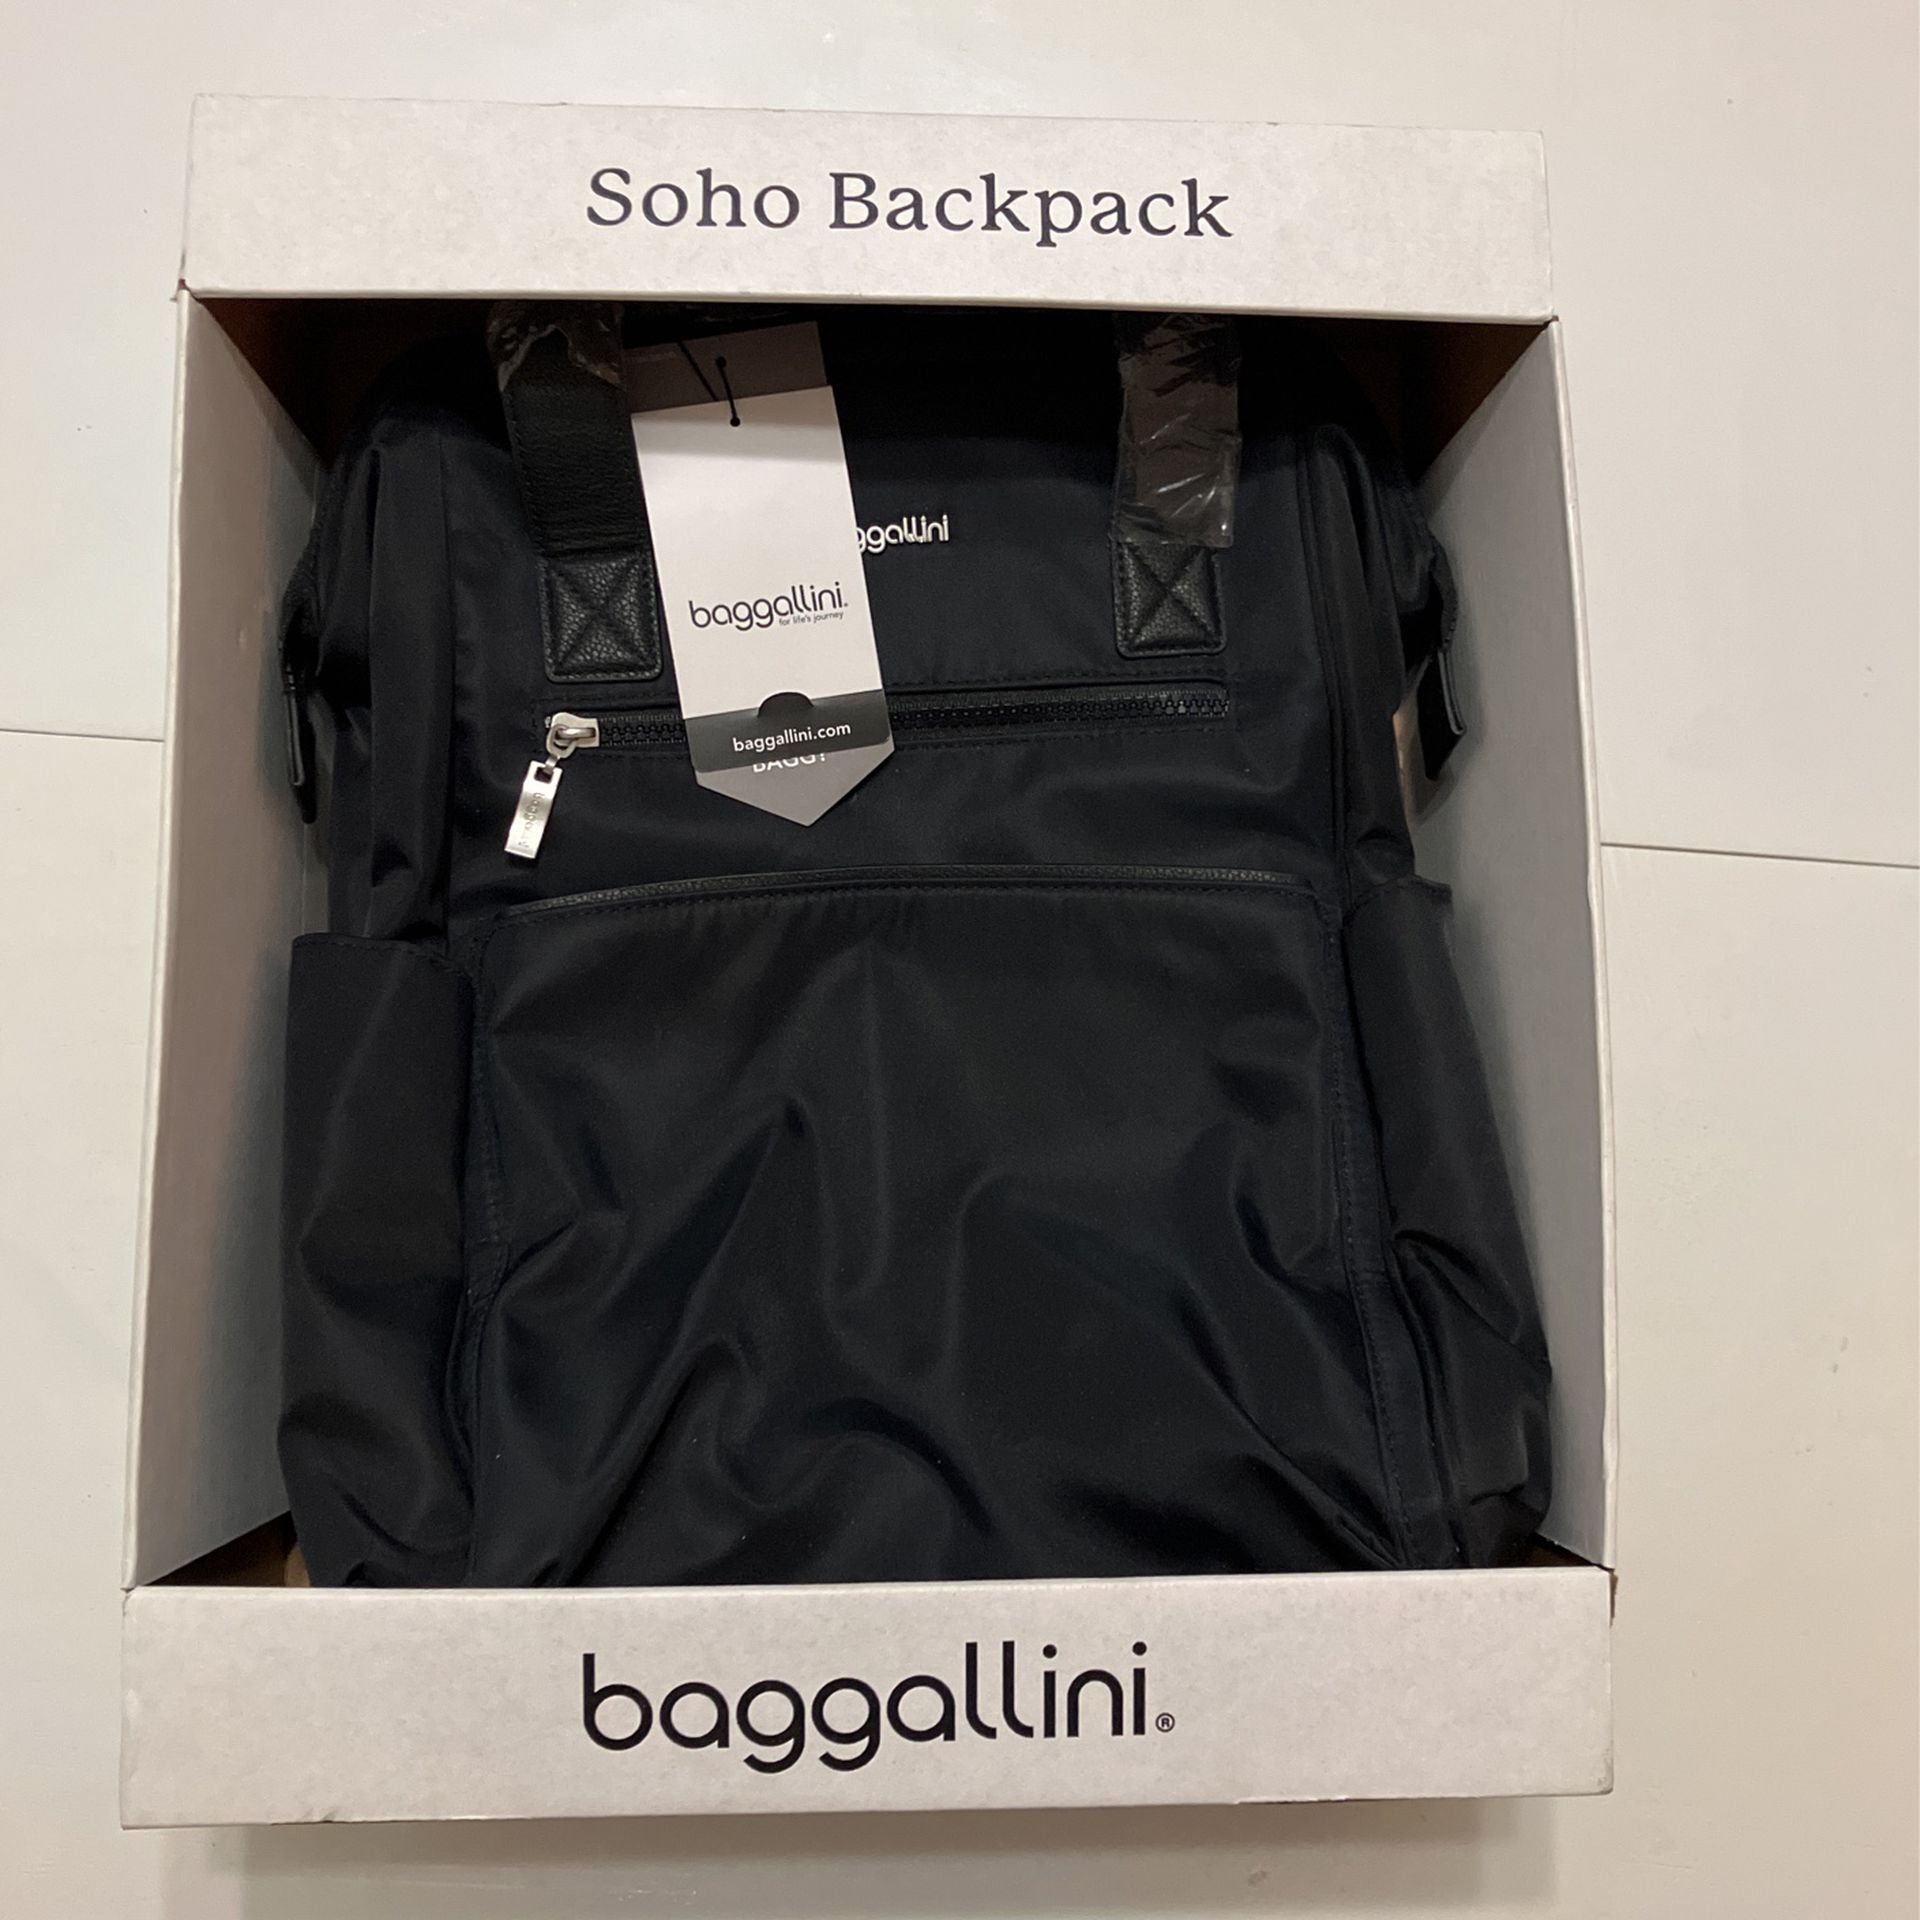 Baggallini Soho Backpack